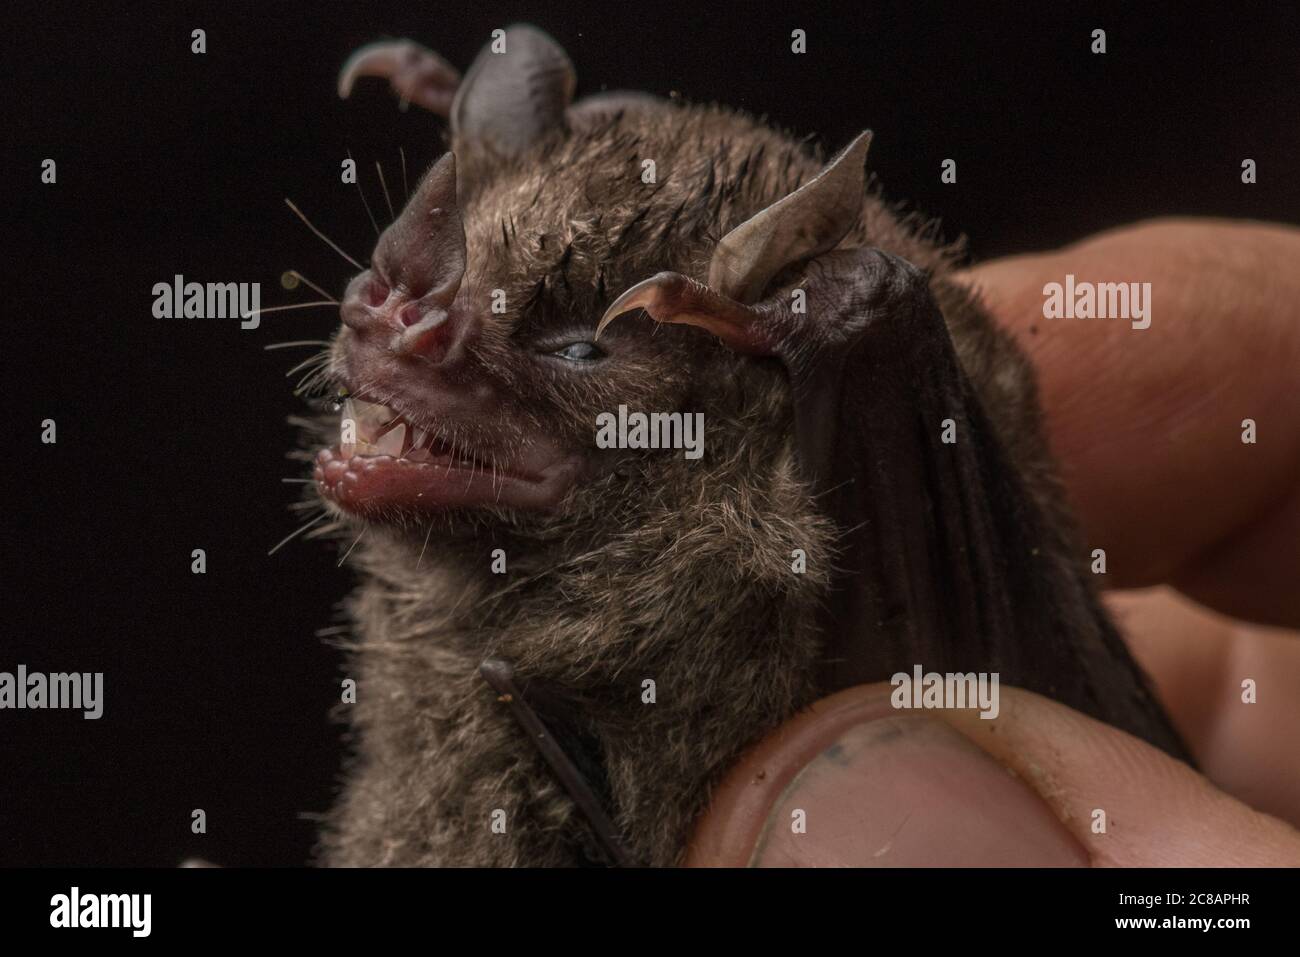 A bat captured for bat research in the Peruvian jungle. Stock Photo